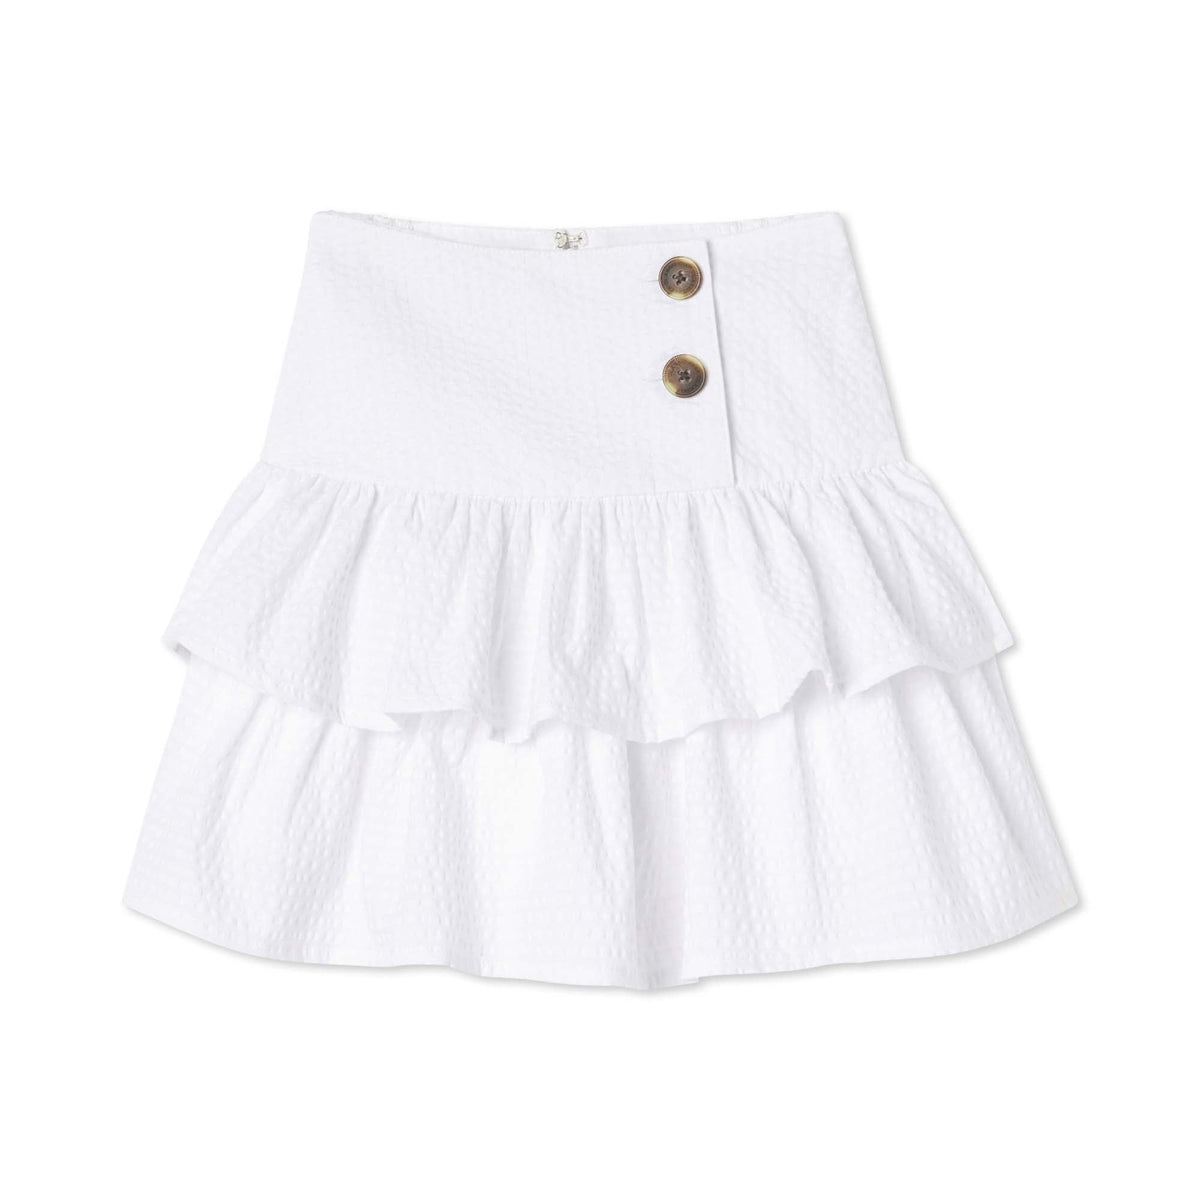 Classic and Preppy Kiki Skirt, Bright White Seersucker-Bottoms-Bright White on Bright White Seersucker-2T-CPC - Classic Prep Childrenswear